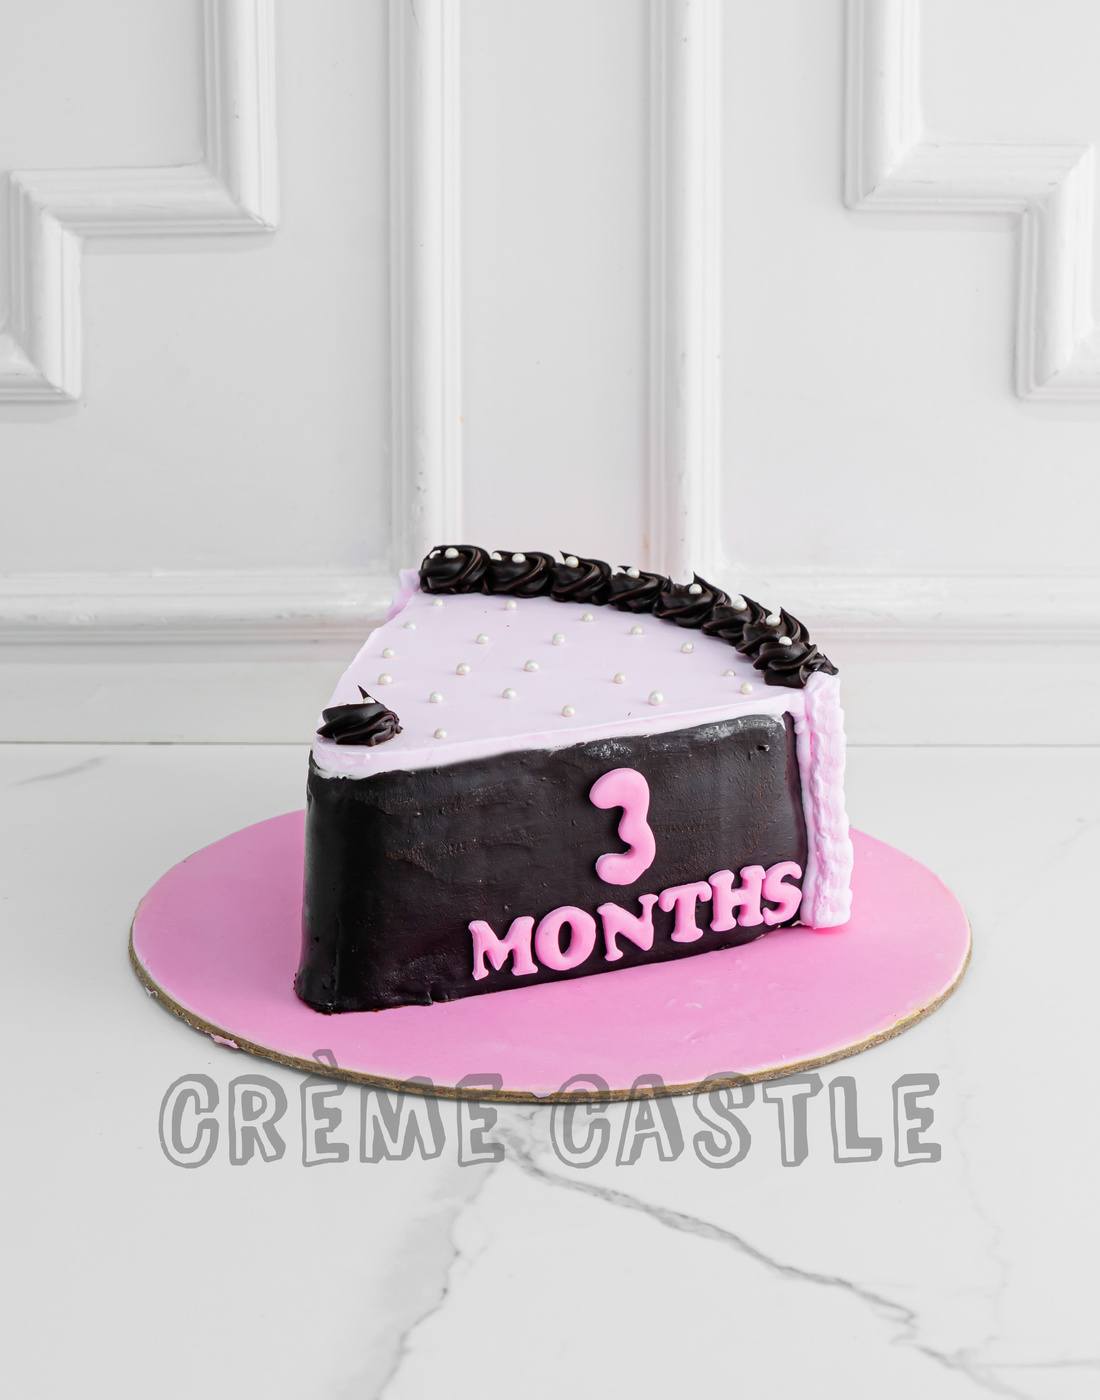 Buy/Send 3 Years Birthday Cake Online @ Rs. 3499 - SendBestGift